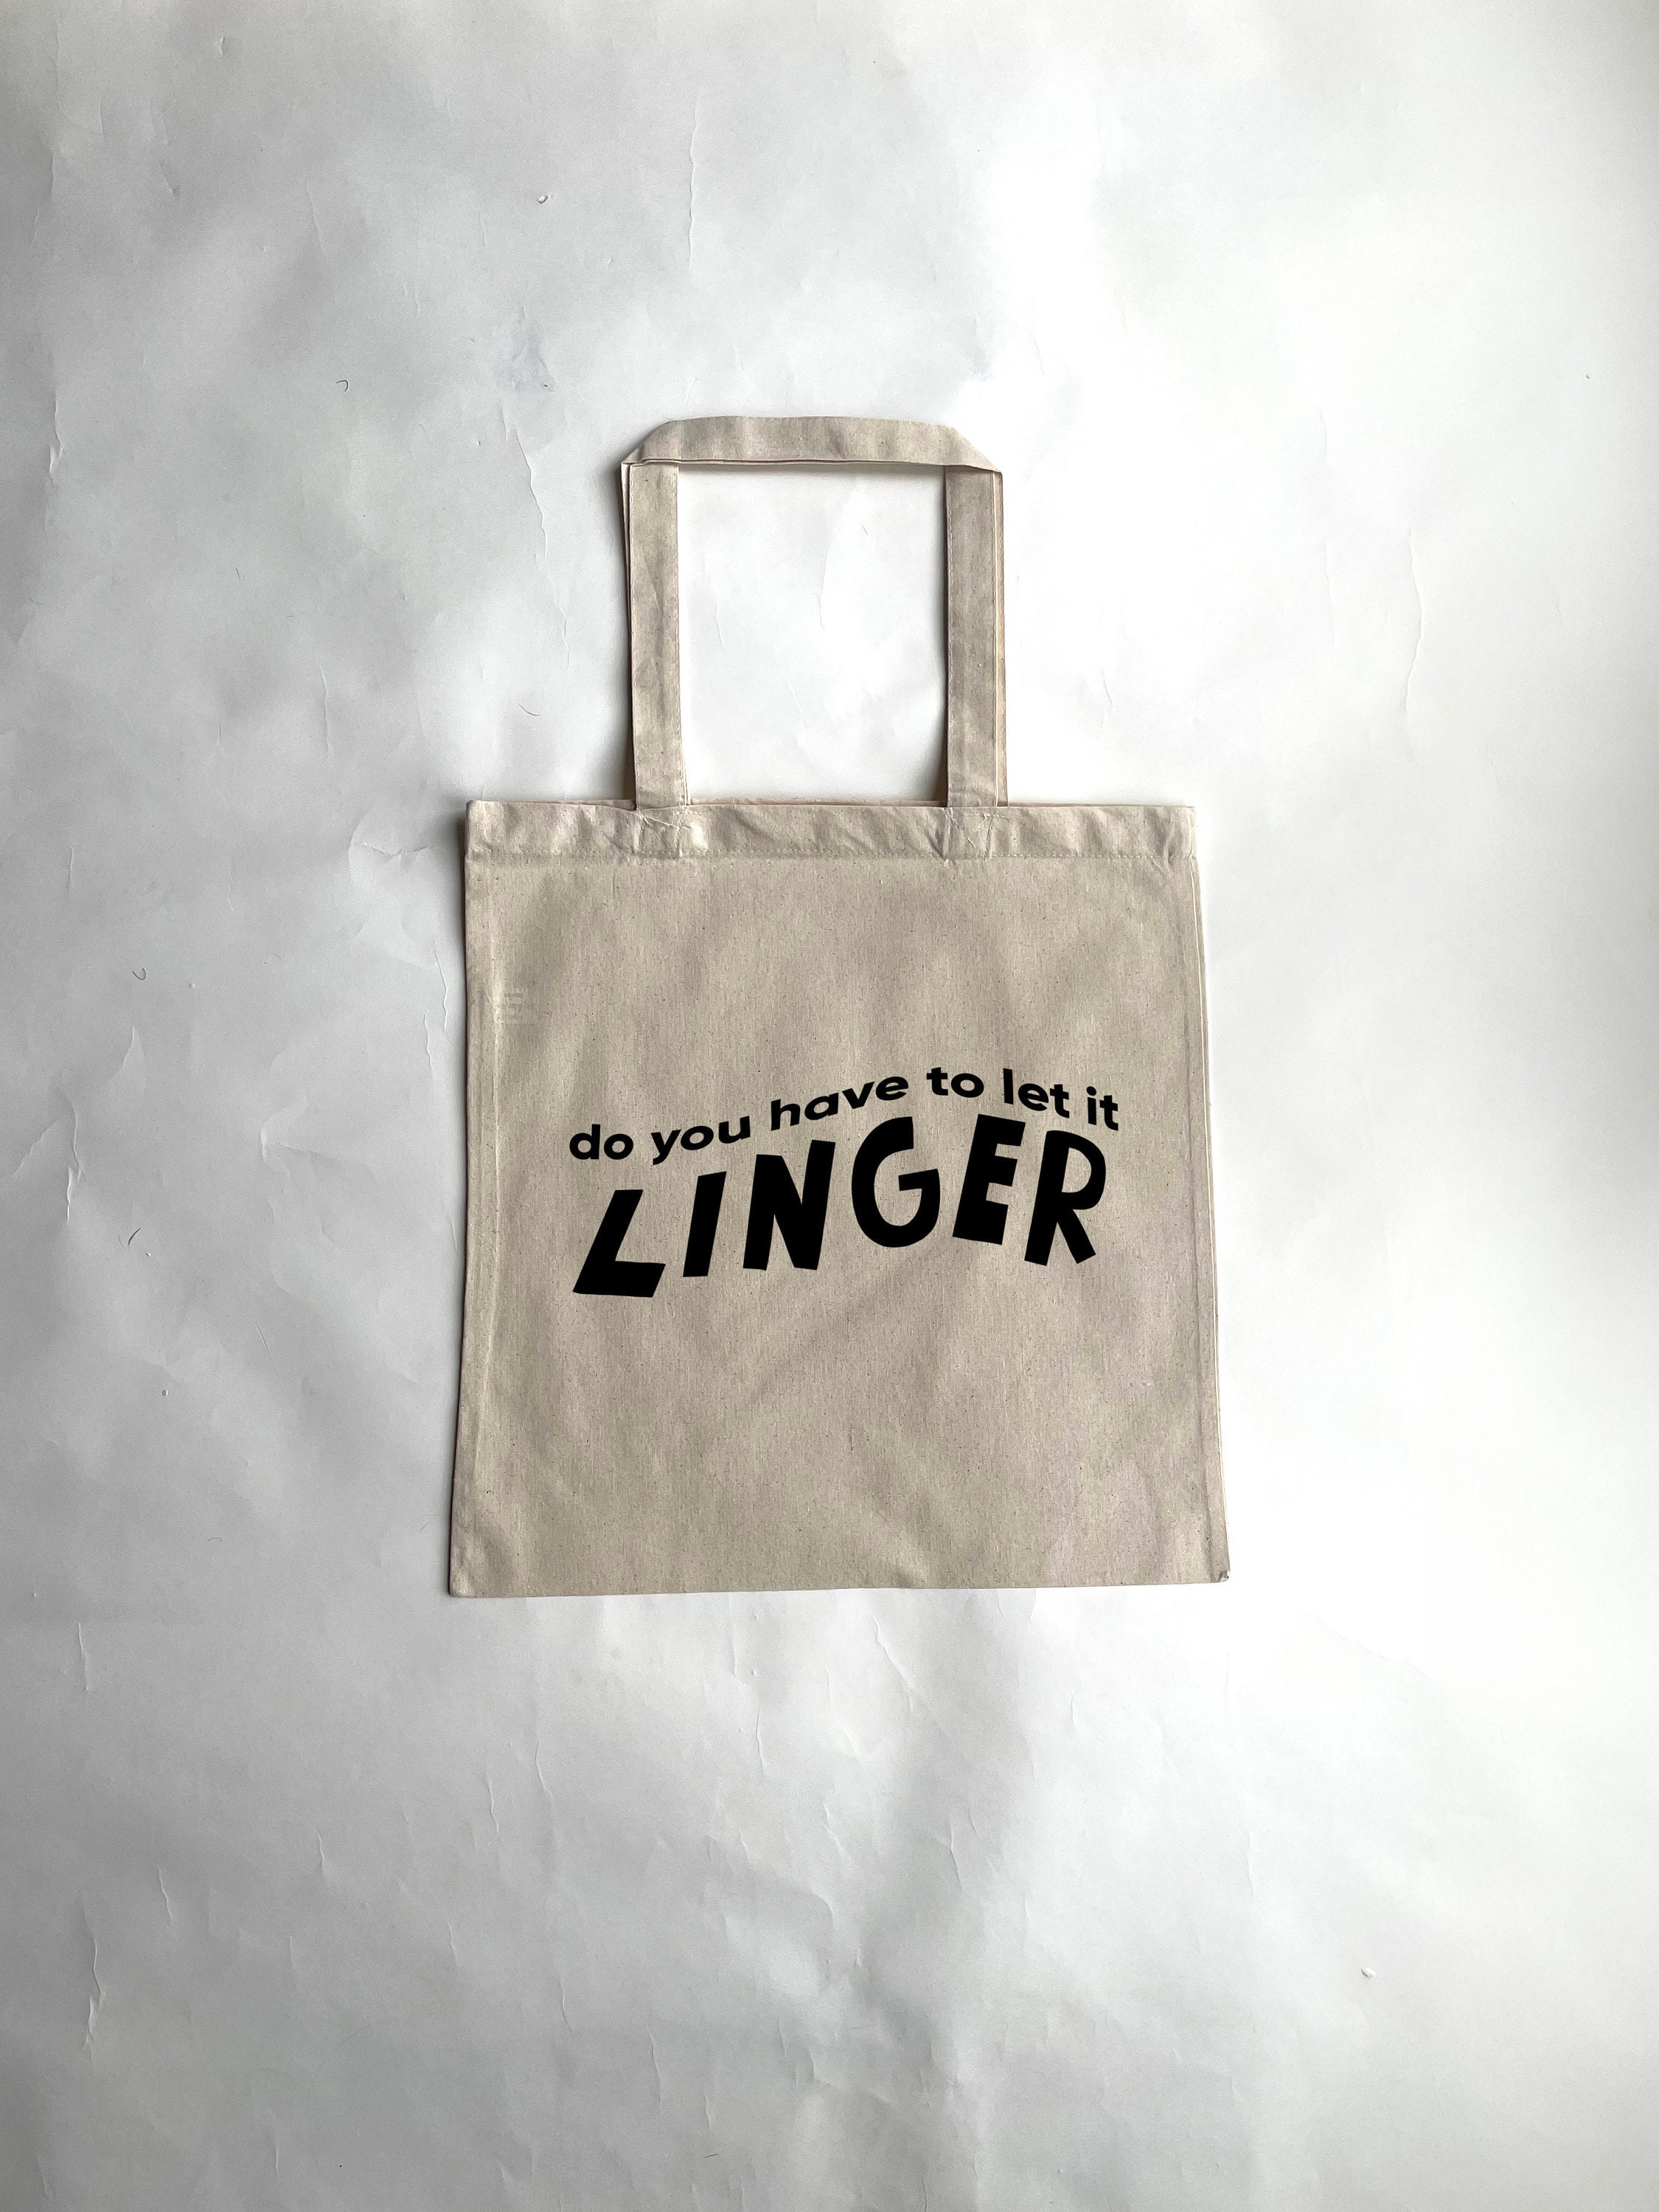 Linger Bumpersticker – Das Bootleg